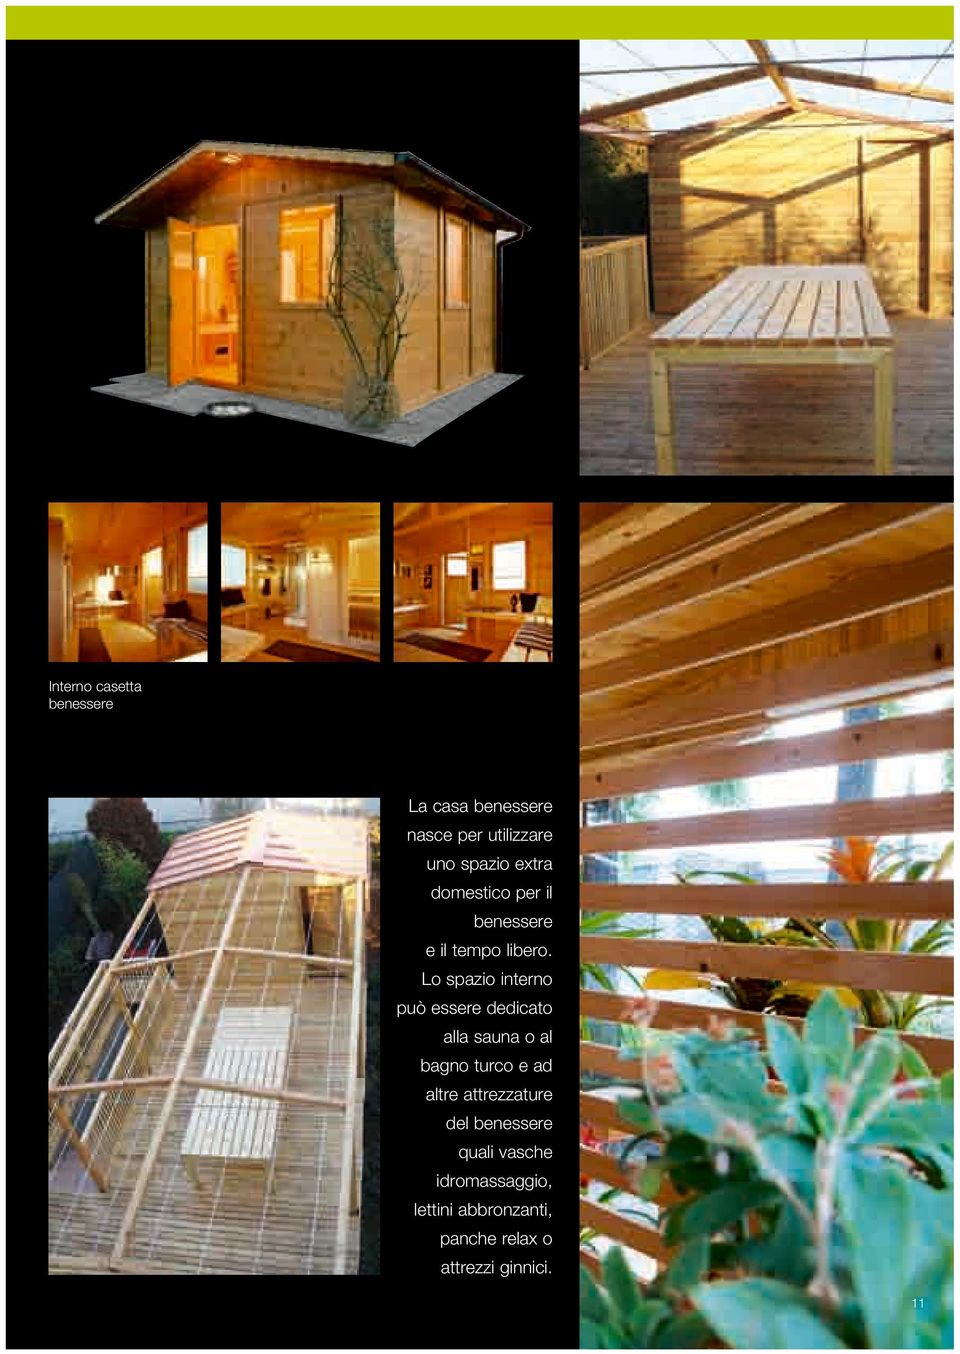 Lo spazio interno può essere dedicato alla sauna o al bagno turco e ad altre